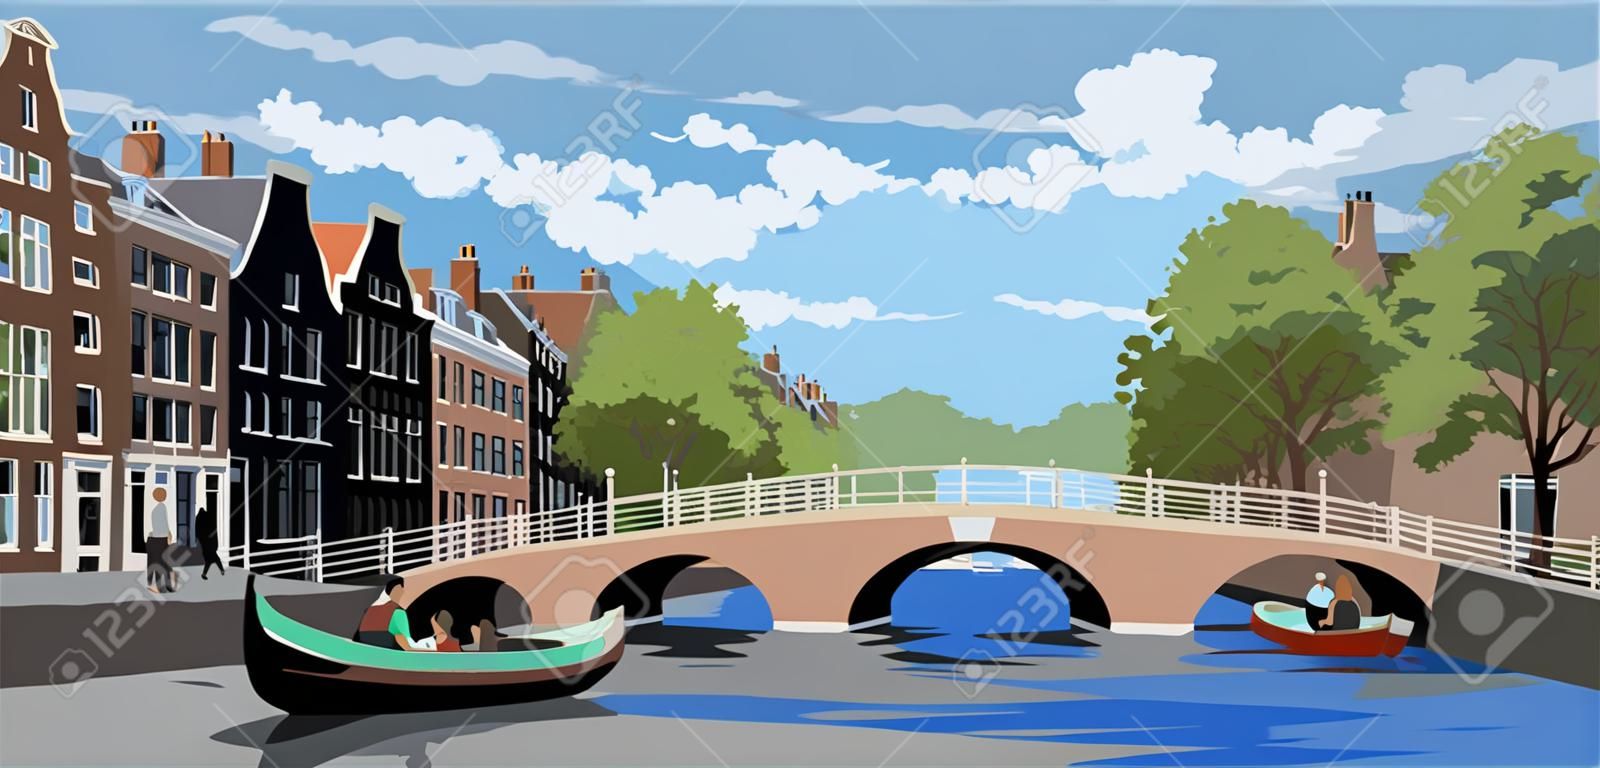 Pejzaż miejski z mostem nad kanałami amsterdamu, holandia. punkt orientacyjny Holandii. ilustracja kolorowy wektor.